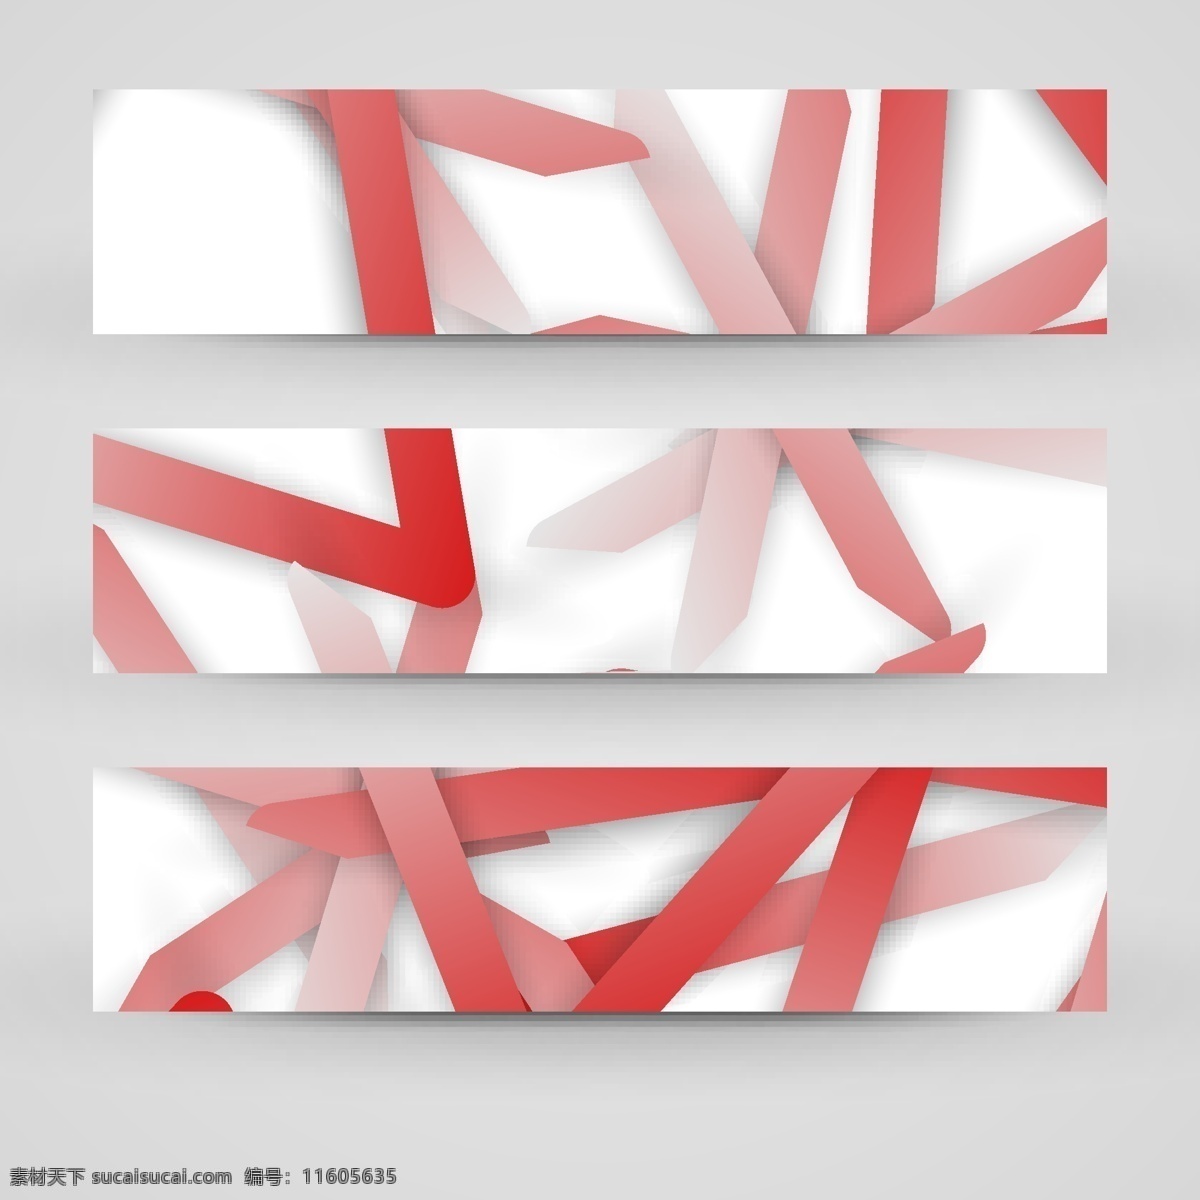 红色 条纹 横幅 广告 模版 折纸 条幅 banner 图案 花纹 彩色背景 其他模板 矢量素材 白色